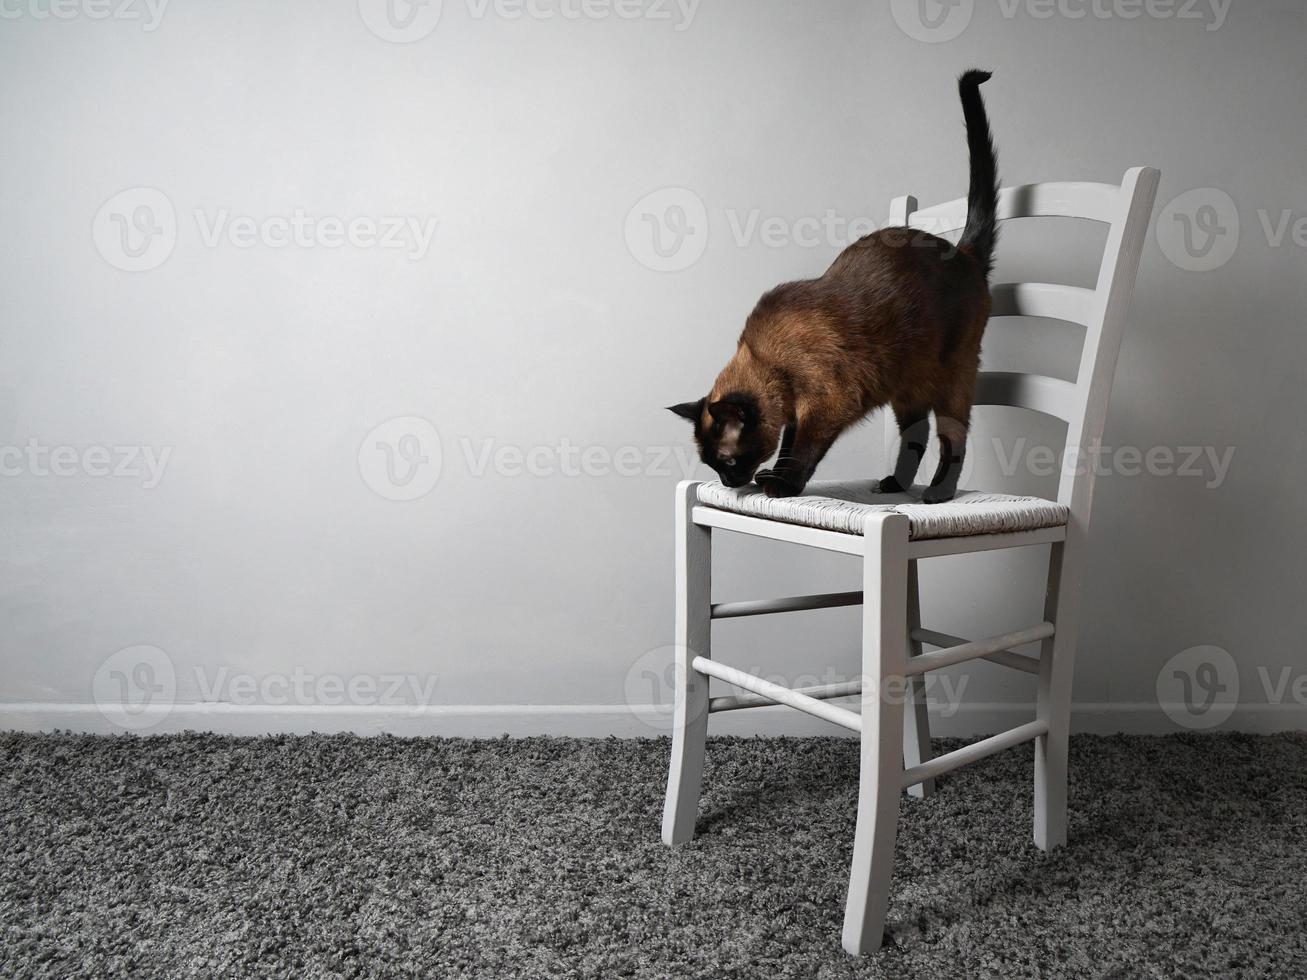 gato con miedo a las alturas parado en una silla foto